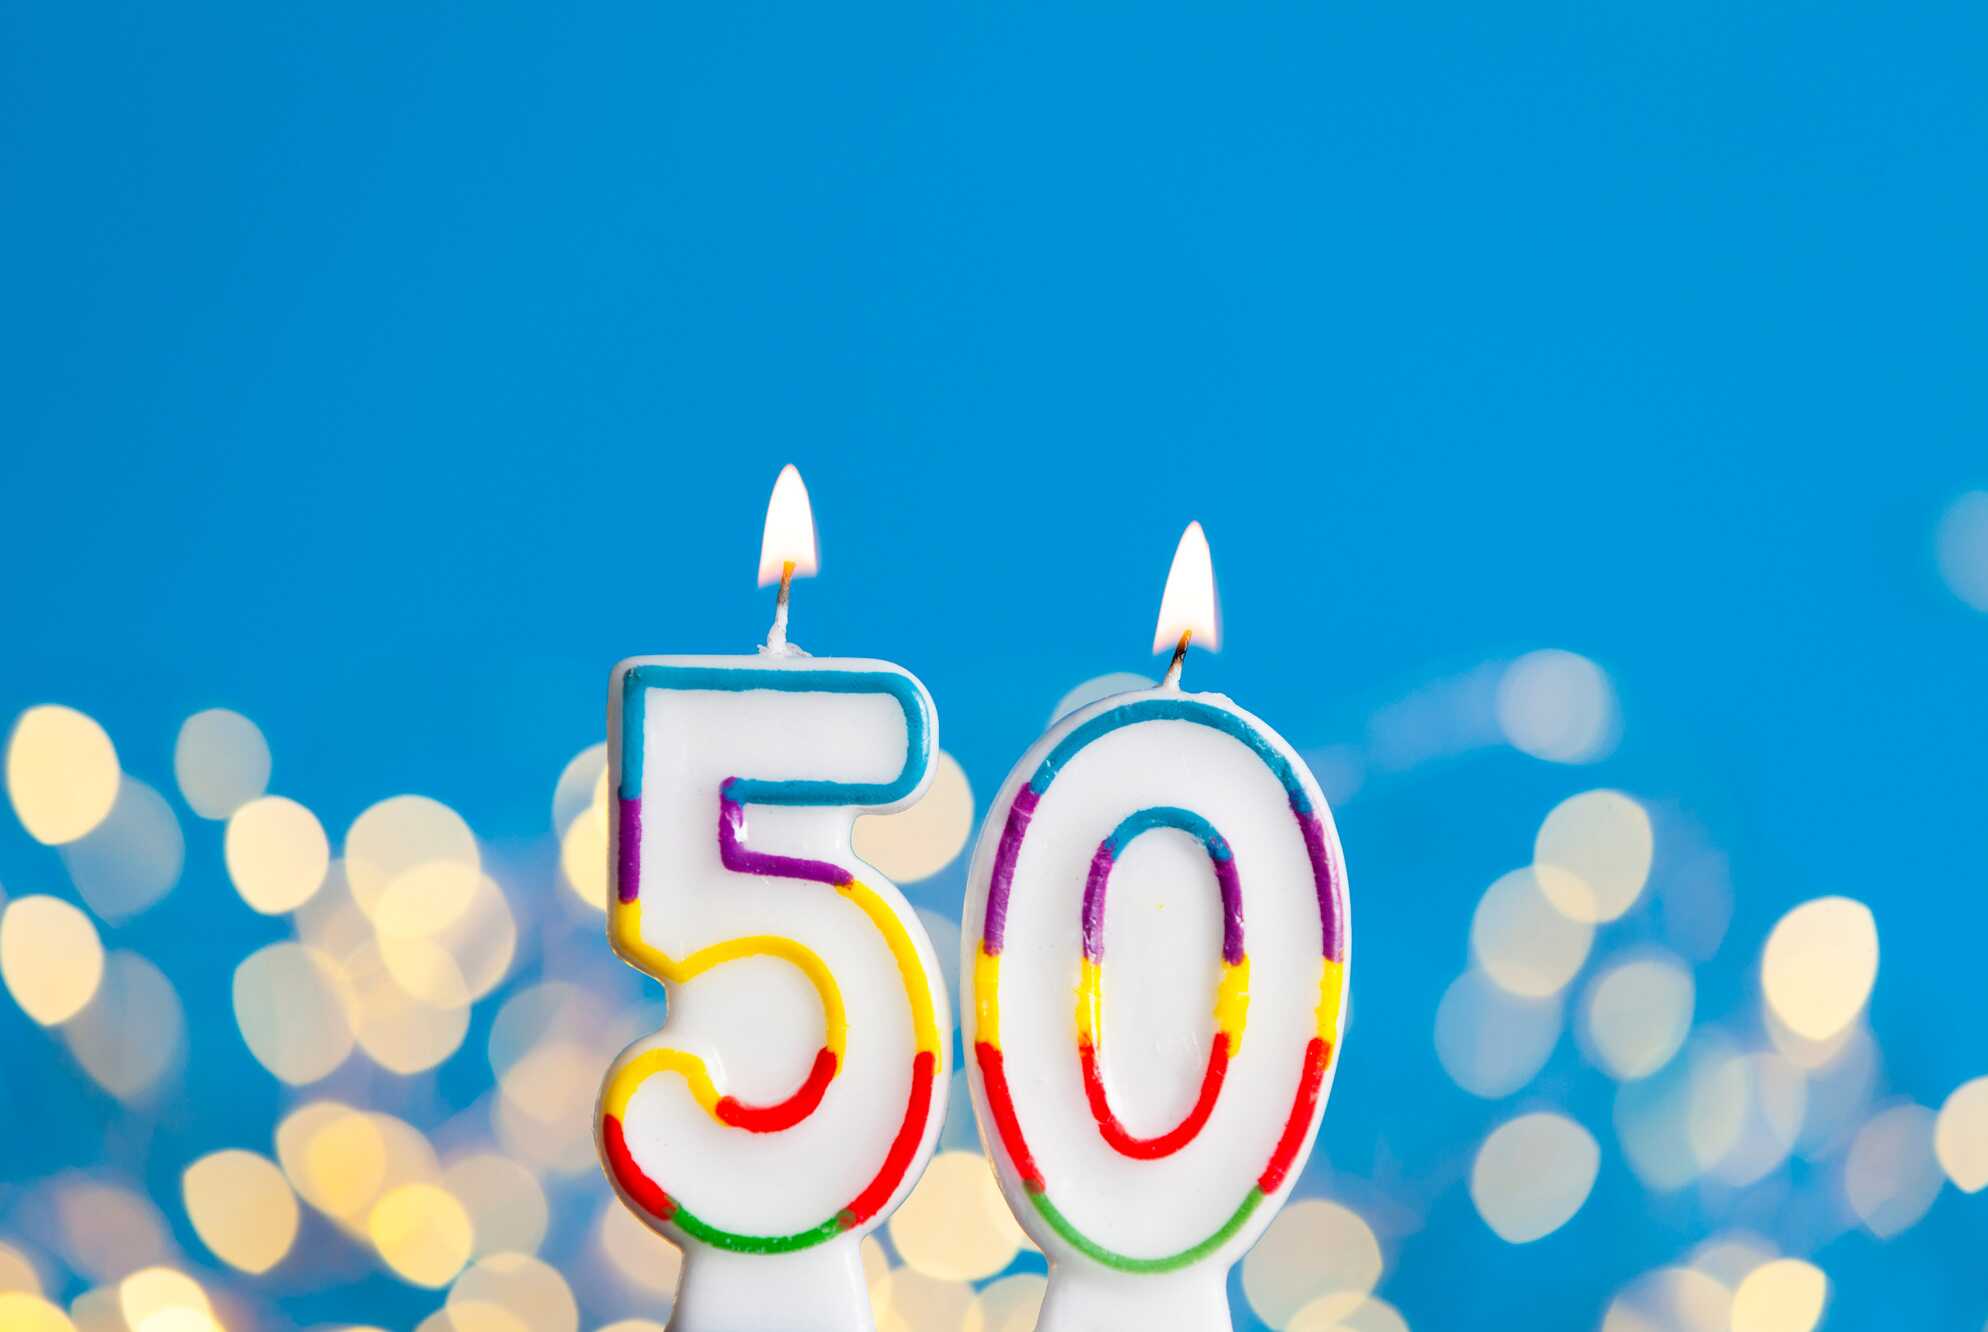 Mỗi người đều có những ý tưởng riêng, nhưng chúng tôi chỉ muốn mang đến cho bạn những gợi ý đặc biệt để tổ chức sinh nhật lần thứ 50 thật đáng nhớ. Hãy nhấp vào hình ảnh để khám phá những ý tưởng tuyệt vời của chúng tôi.